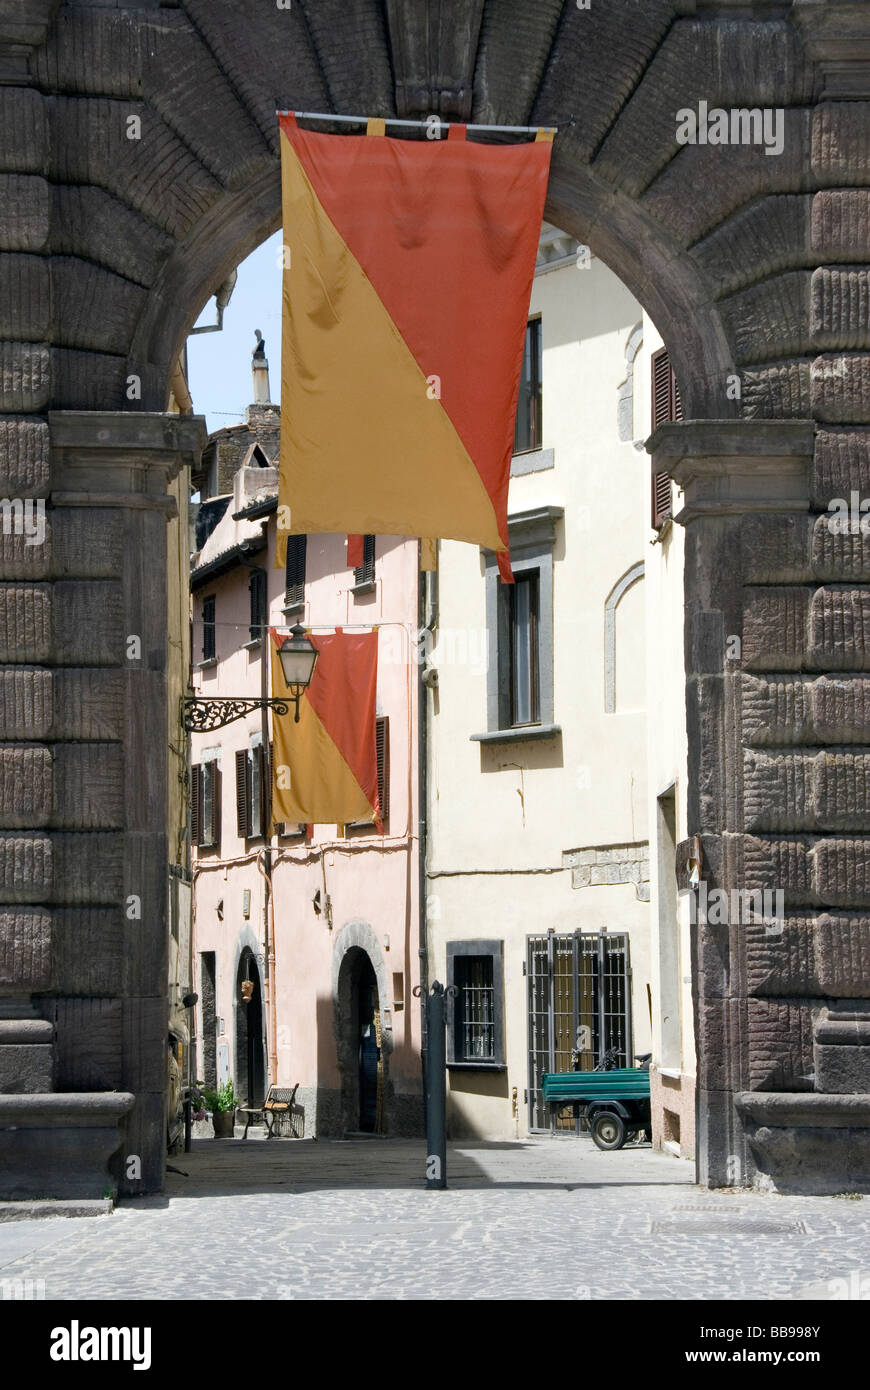 Porta di San Francesco, l'entrée de la ville de Bolsena, sur la rive nord du Lago di Bolsena le plus grand lac volcanique en Italie Banque D'Images